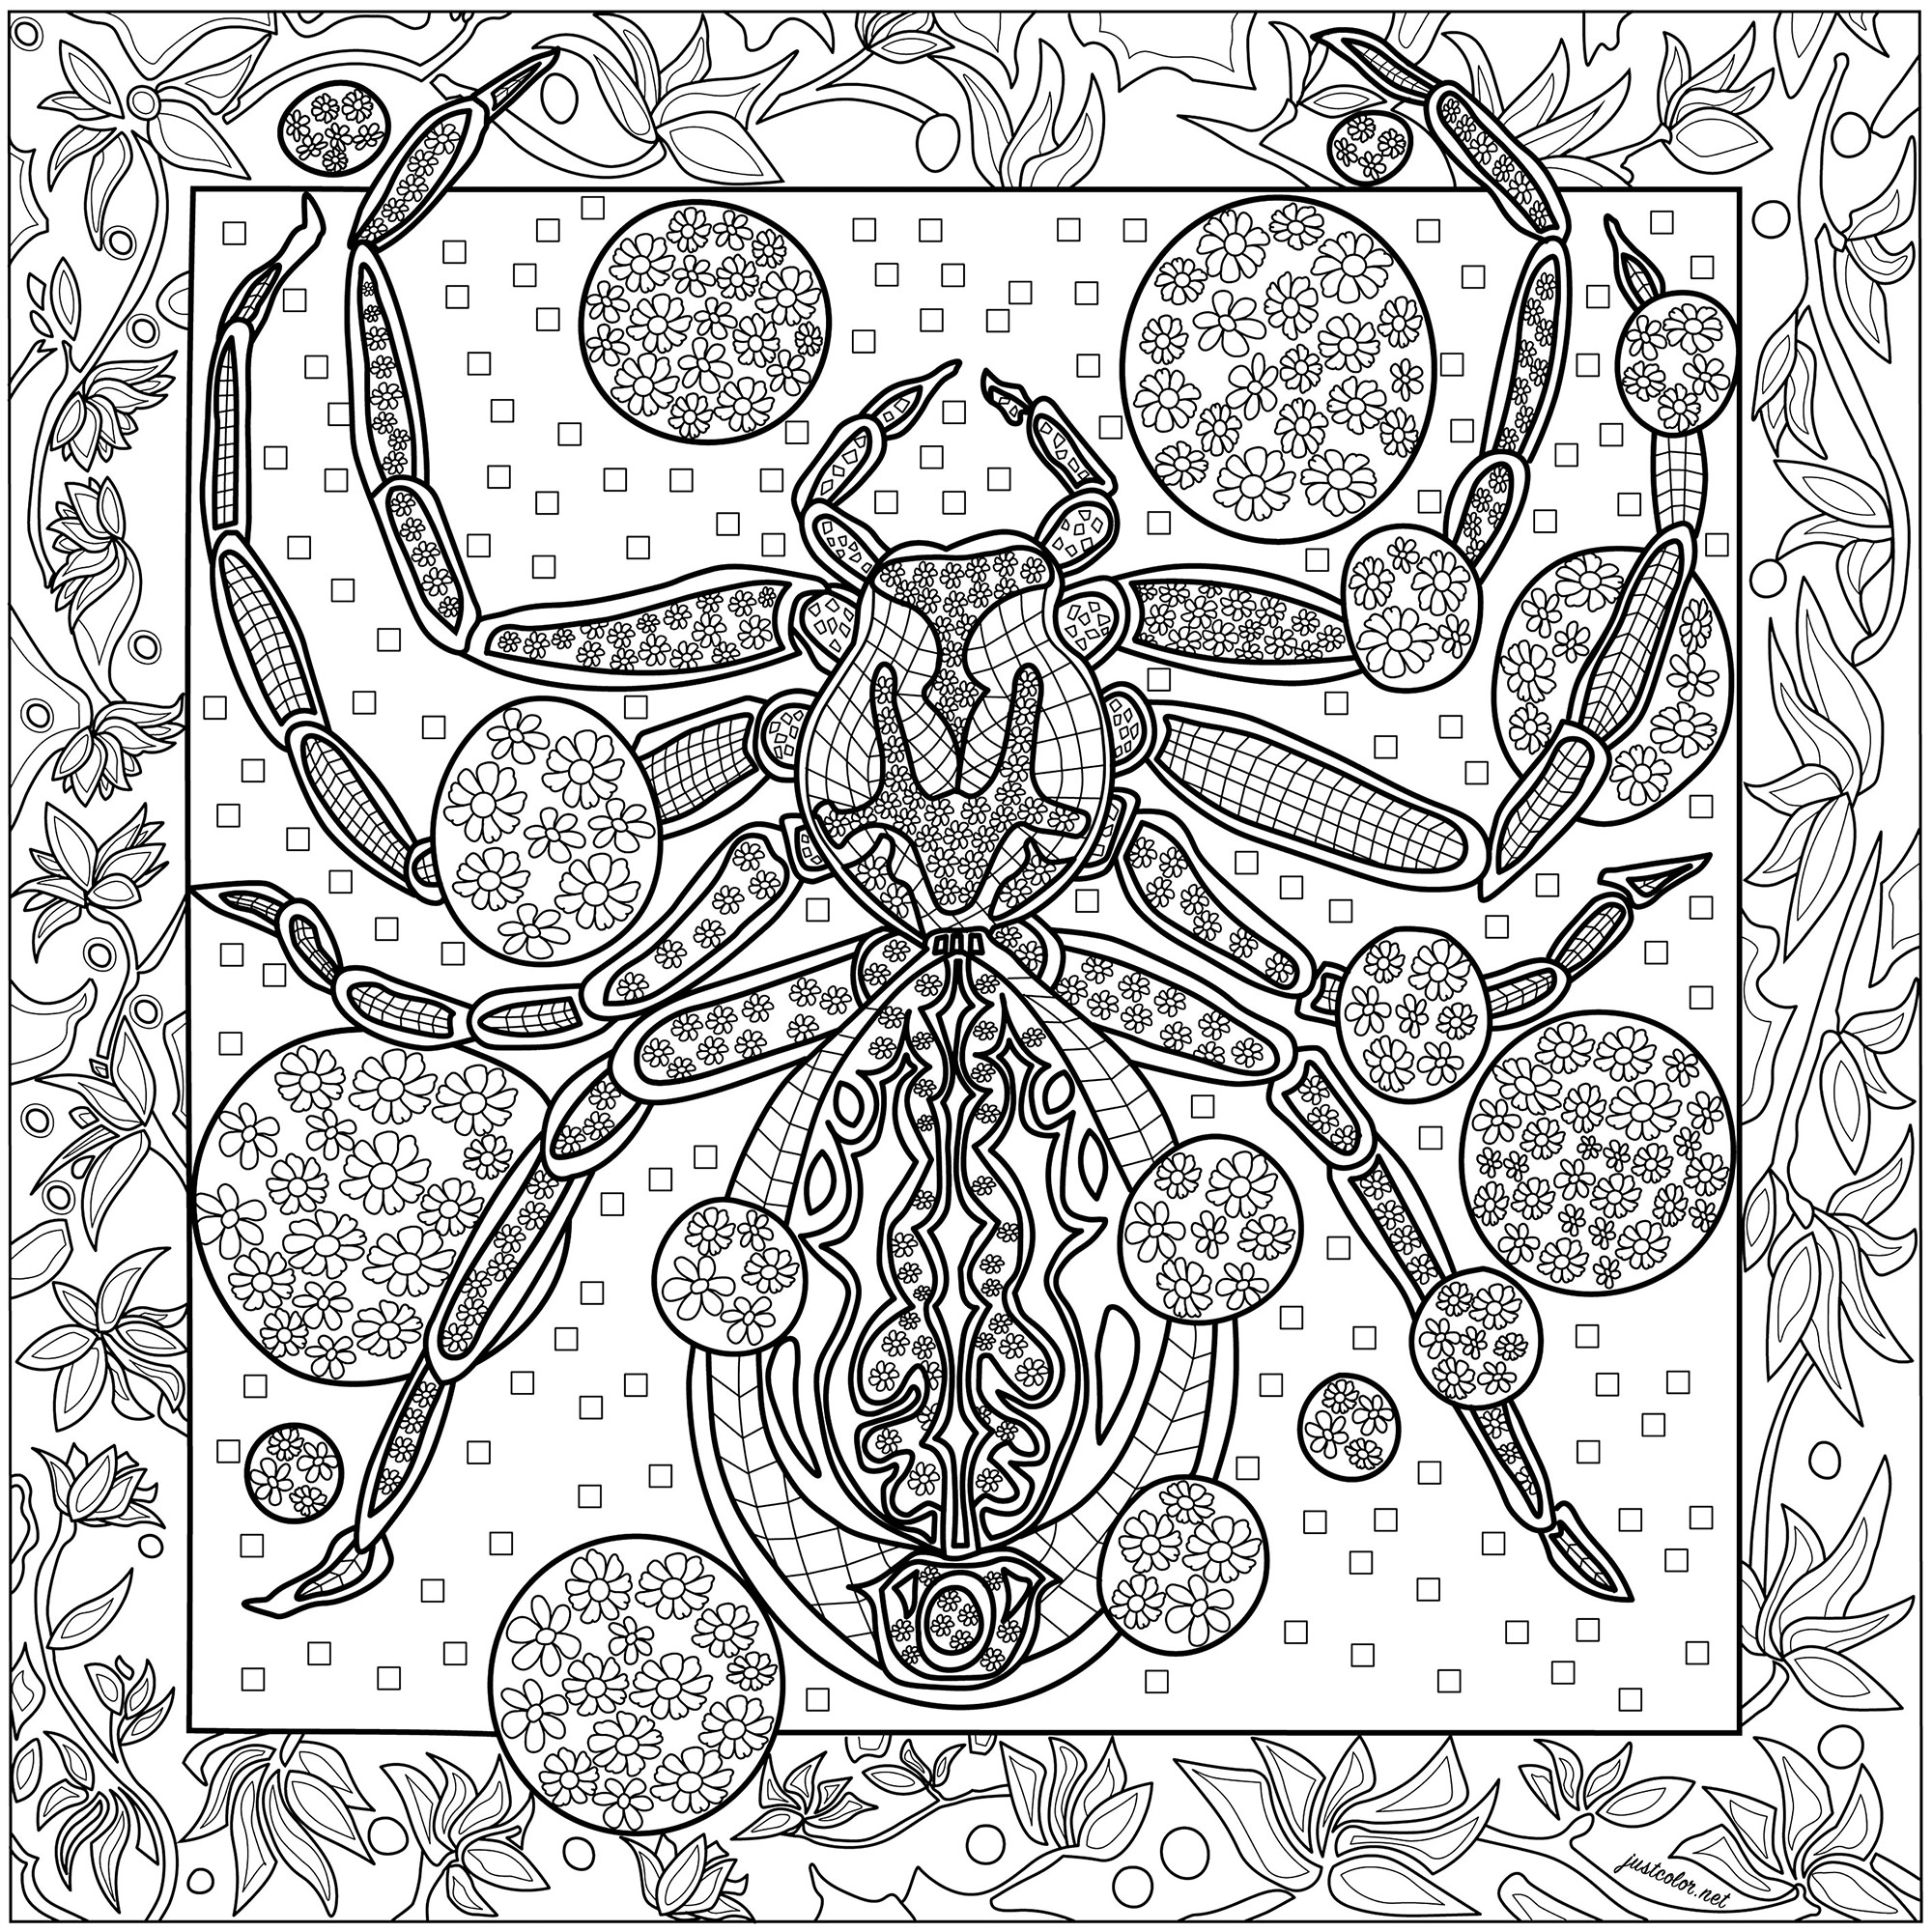 Magnífica araña con increíbles dibujos sobre un fondo rico en detalles.  Te esperan muchas horas de colorear .., Artista : Morgan